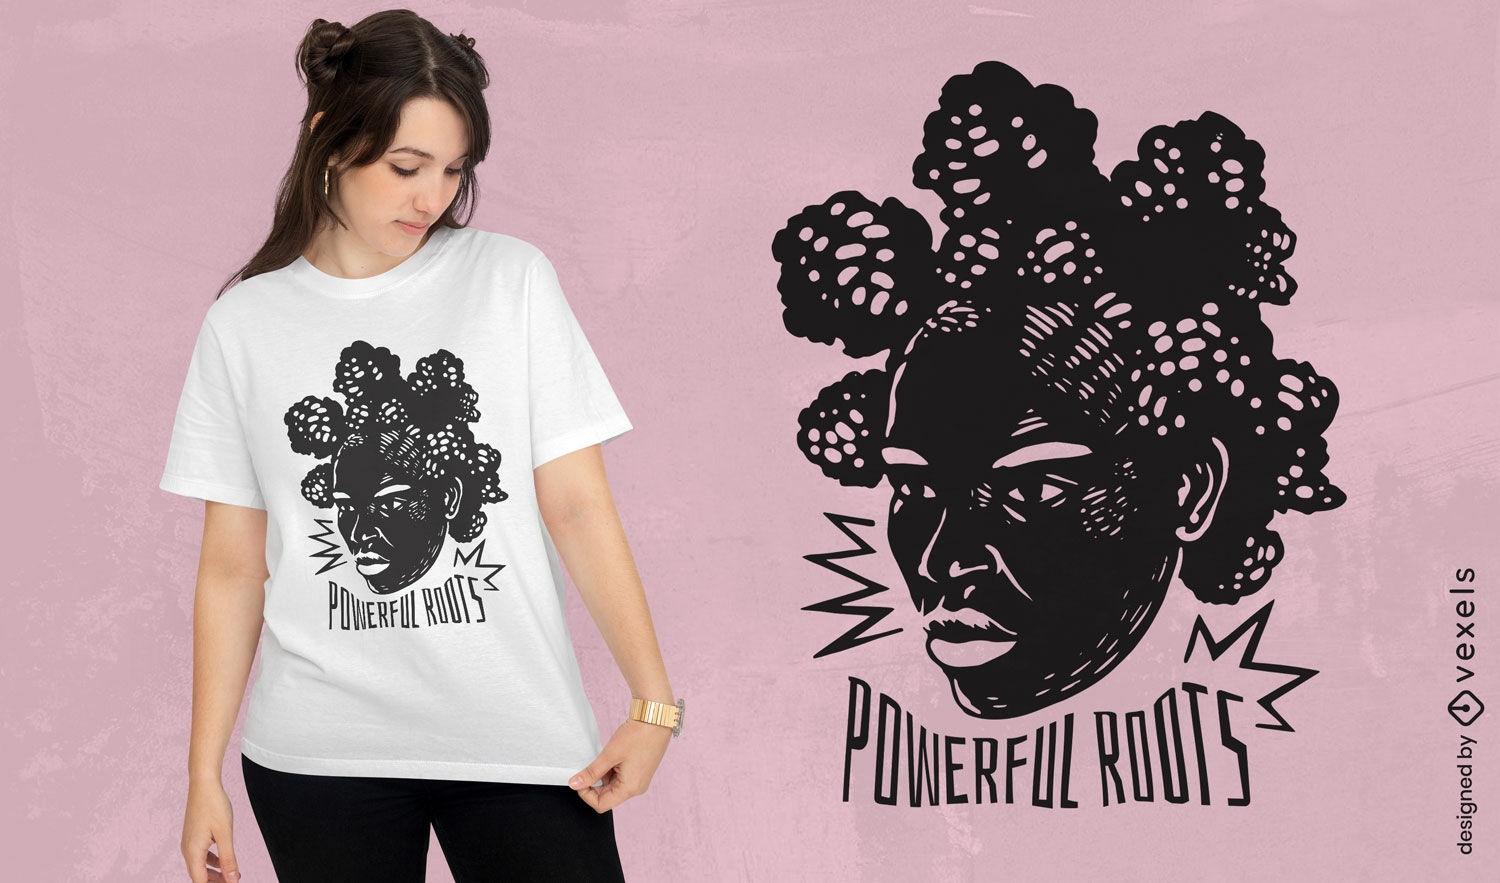 Dise?o de camiseta de mujer negra de ra?ces poderosas.